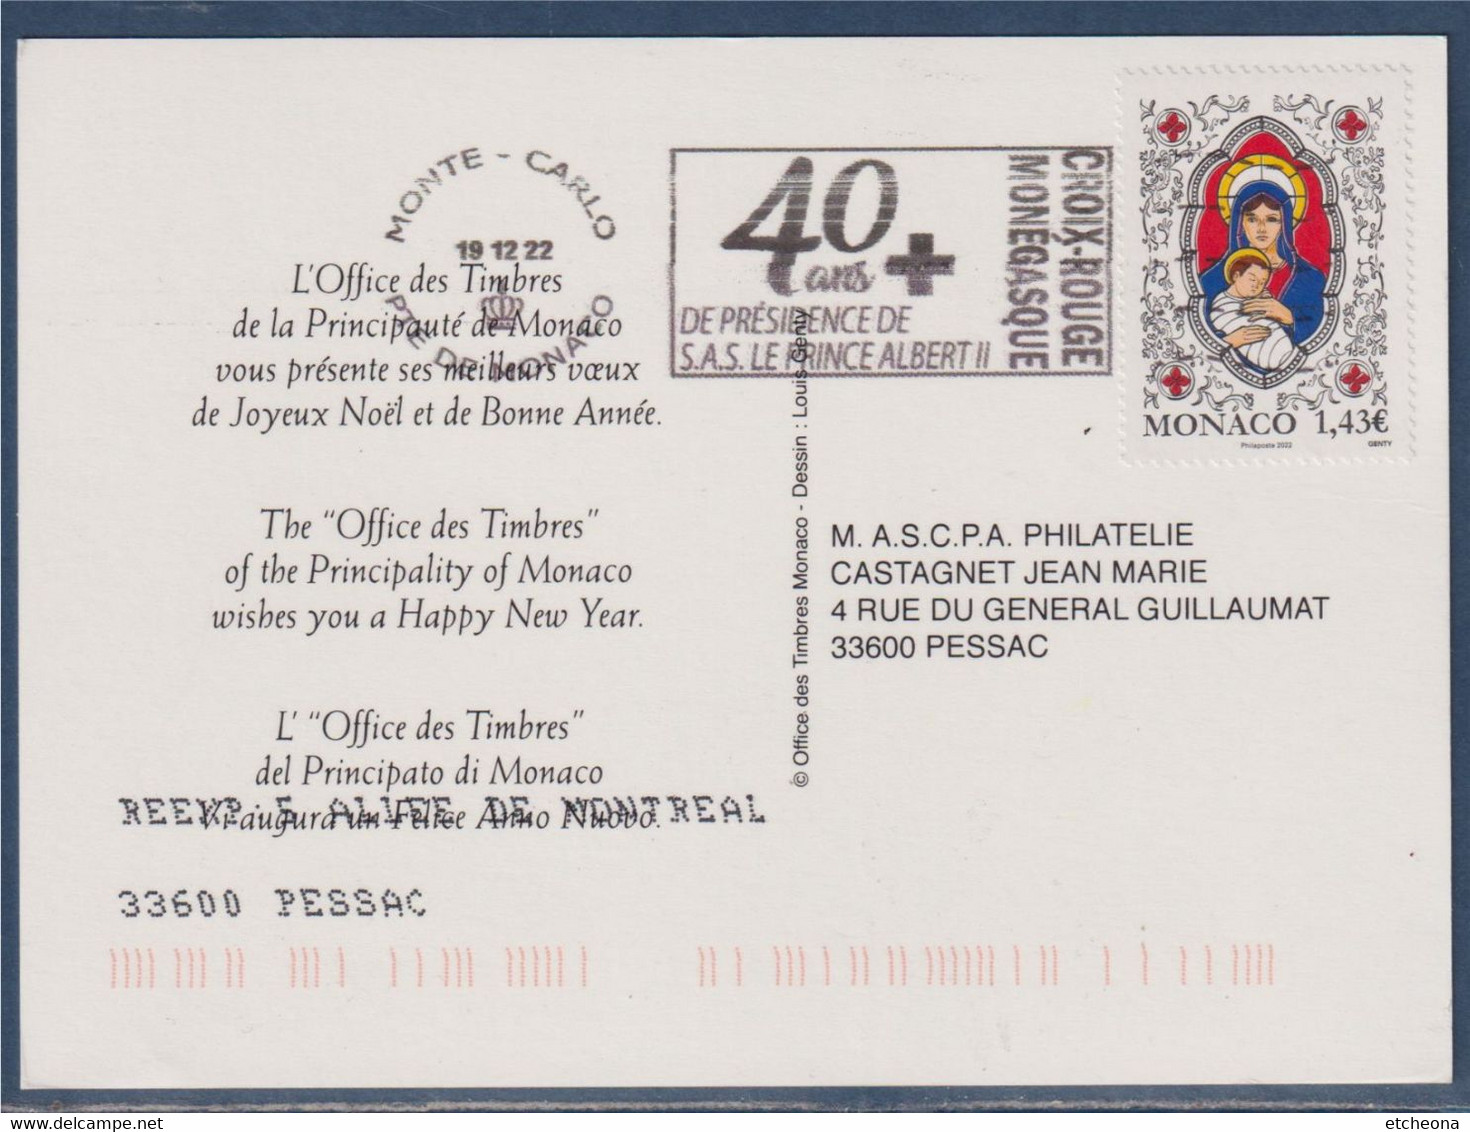 Timbre Reprenant Le Motif De La Carte, Meilleurs Vœux, Flamme 40 Ans De Présidence Des SAS Le Prince Albert II Monaco - Poststempel